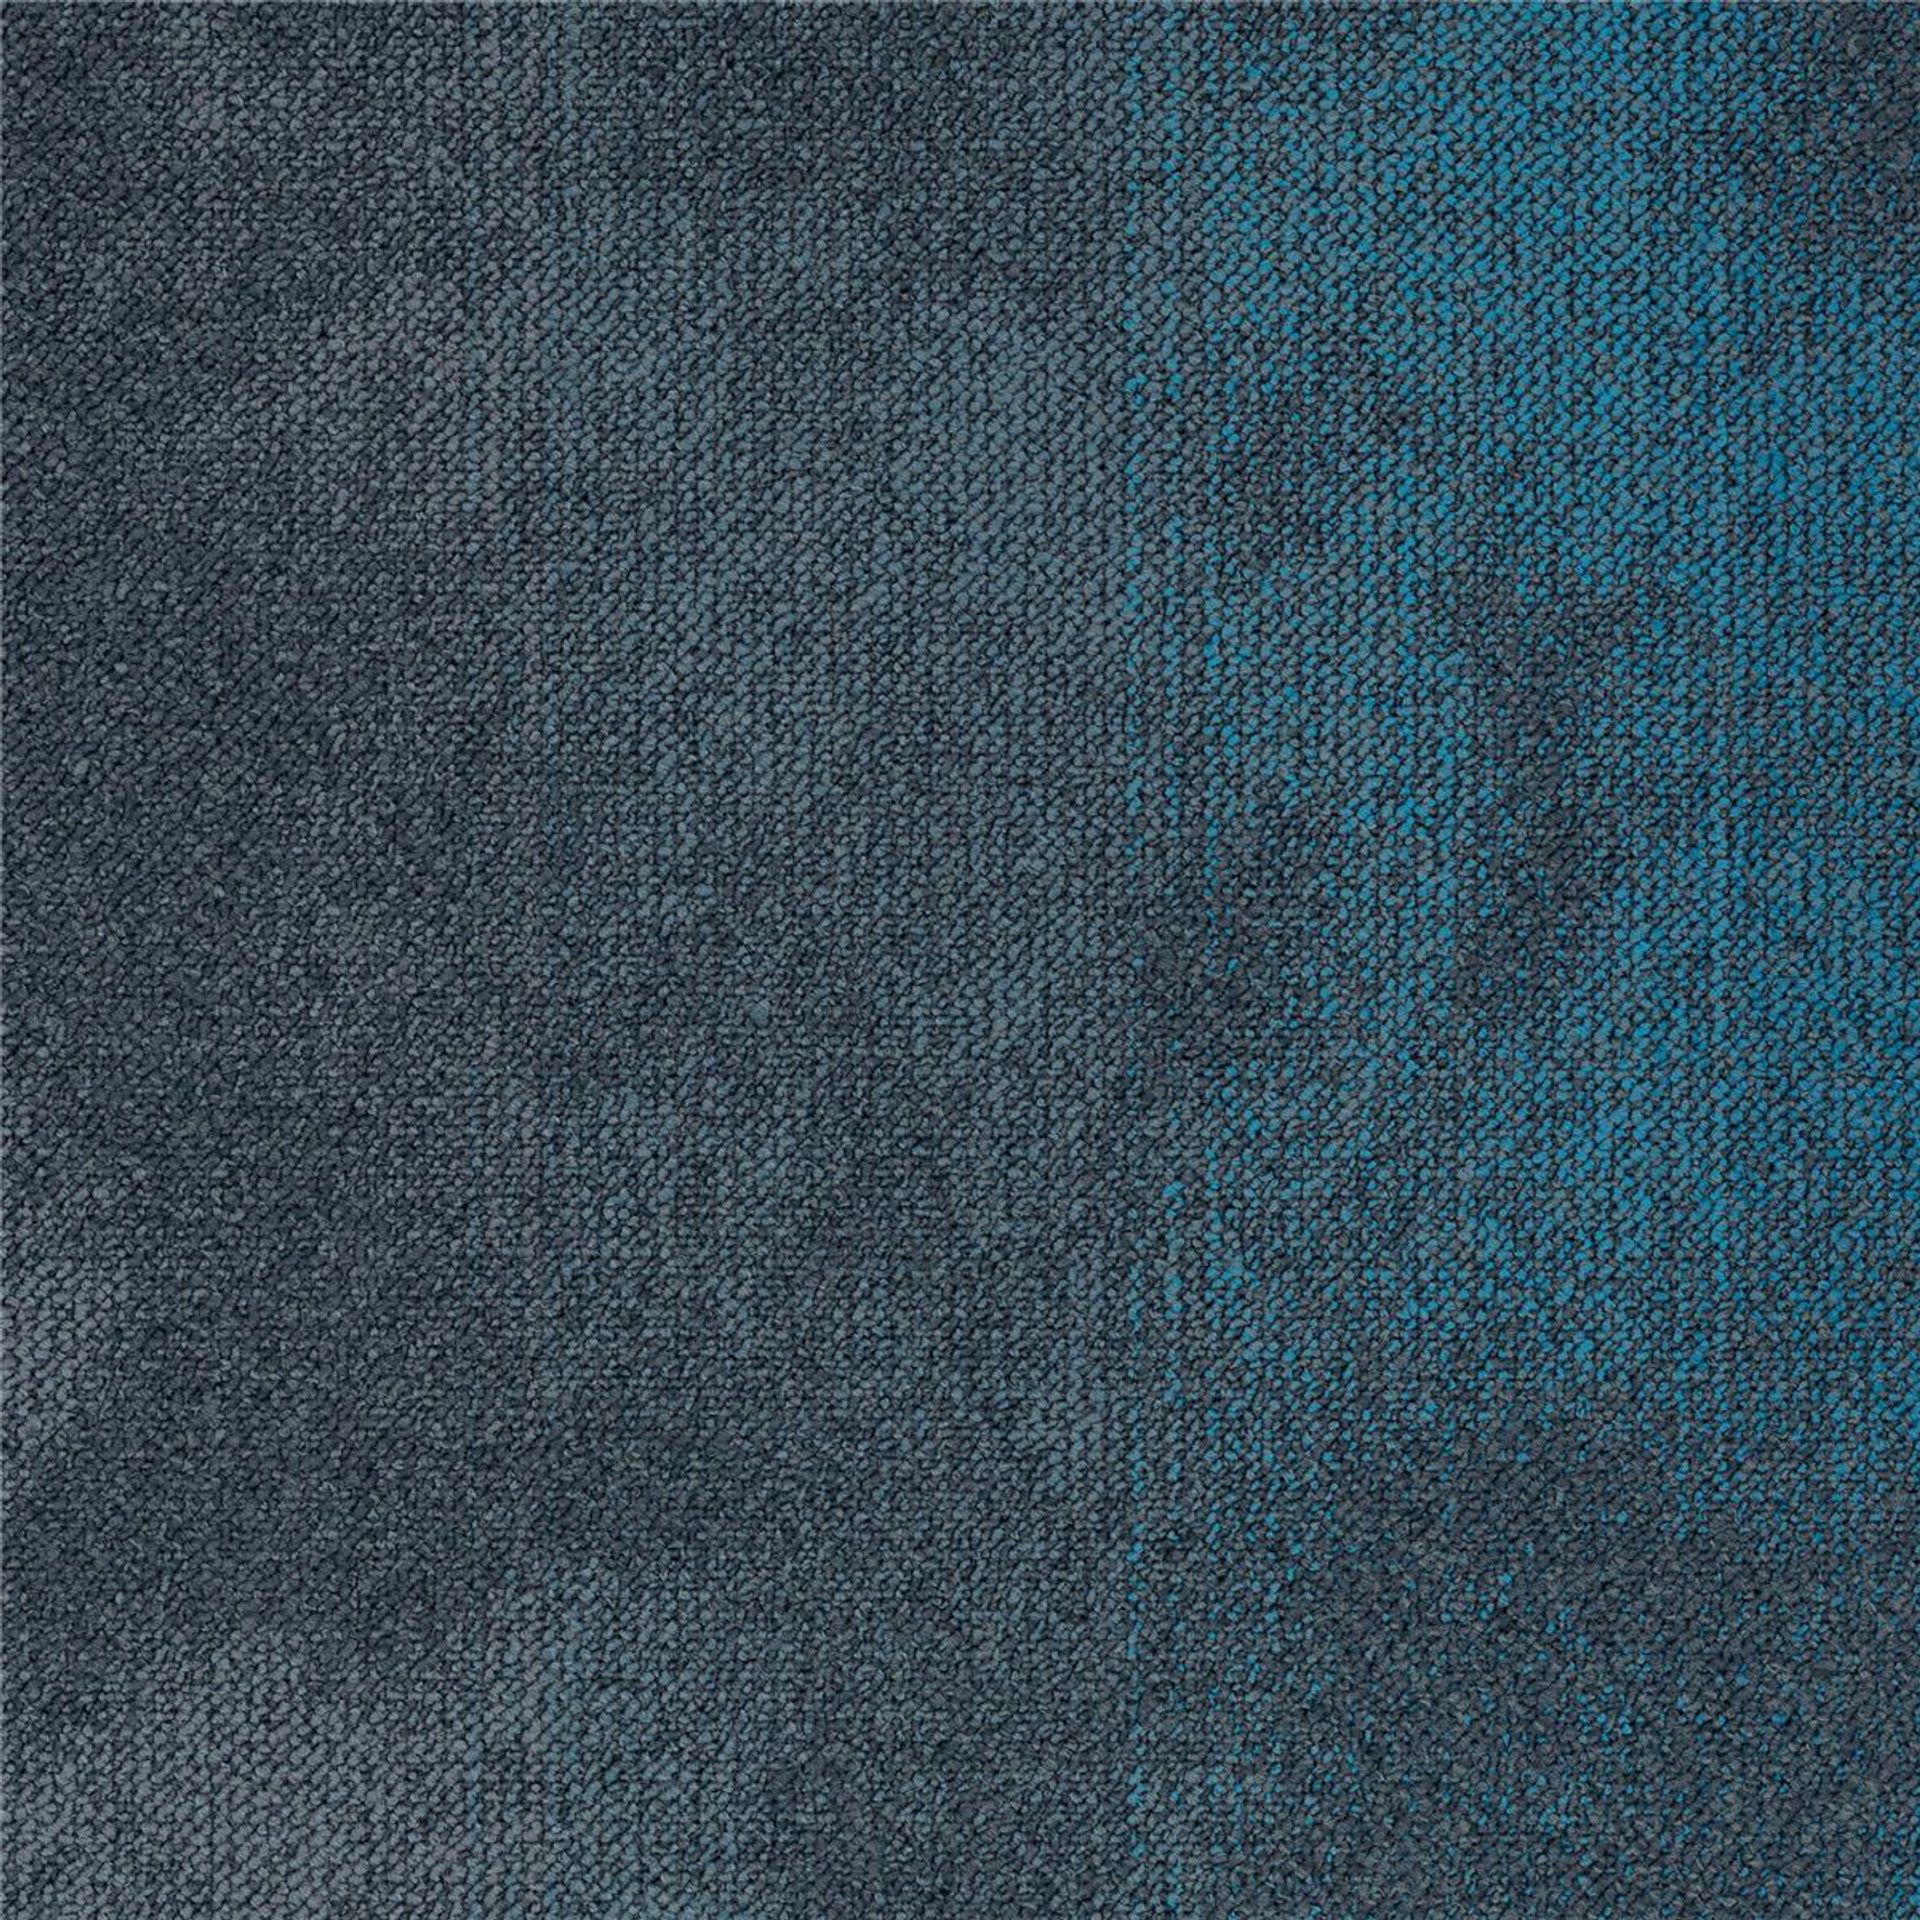 Teppichfliesen 50 x 50 cm Schlinge strukturiert Sere Colour AB94 8212 B8 Blau Organisch